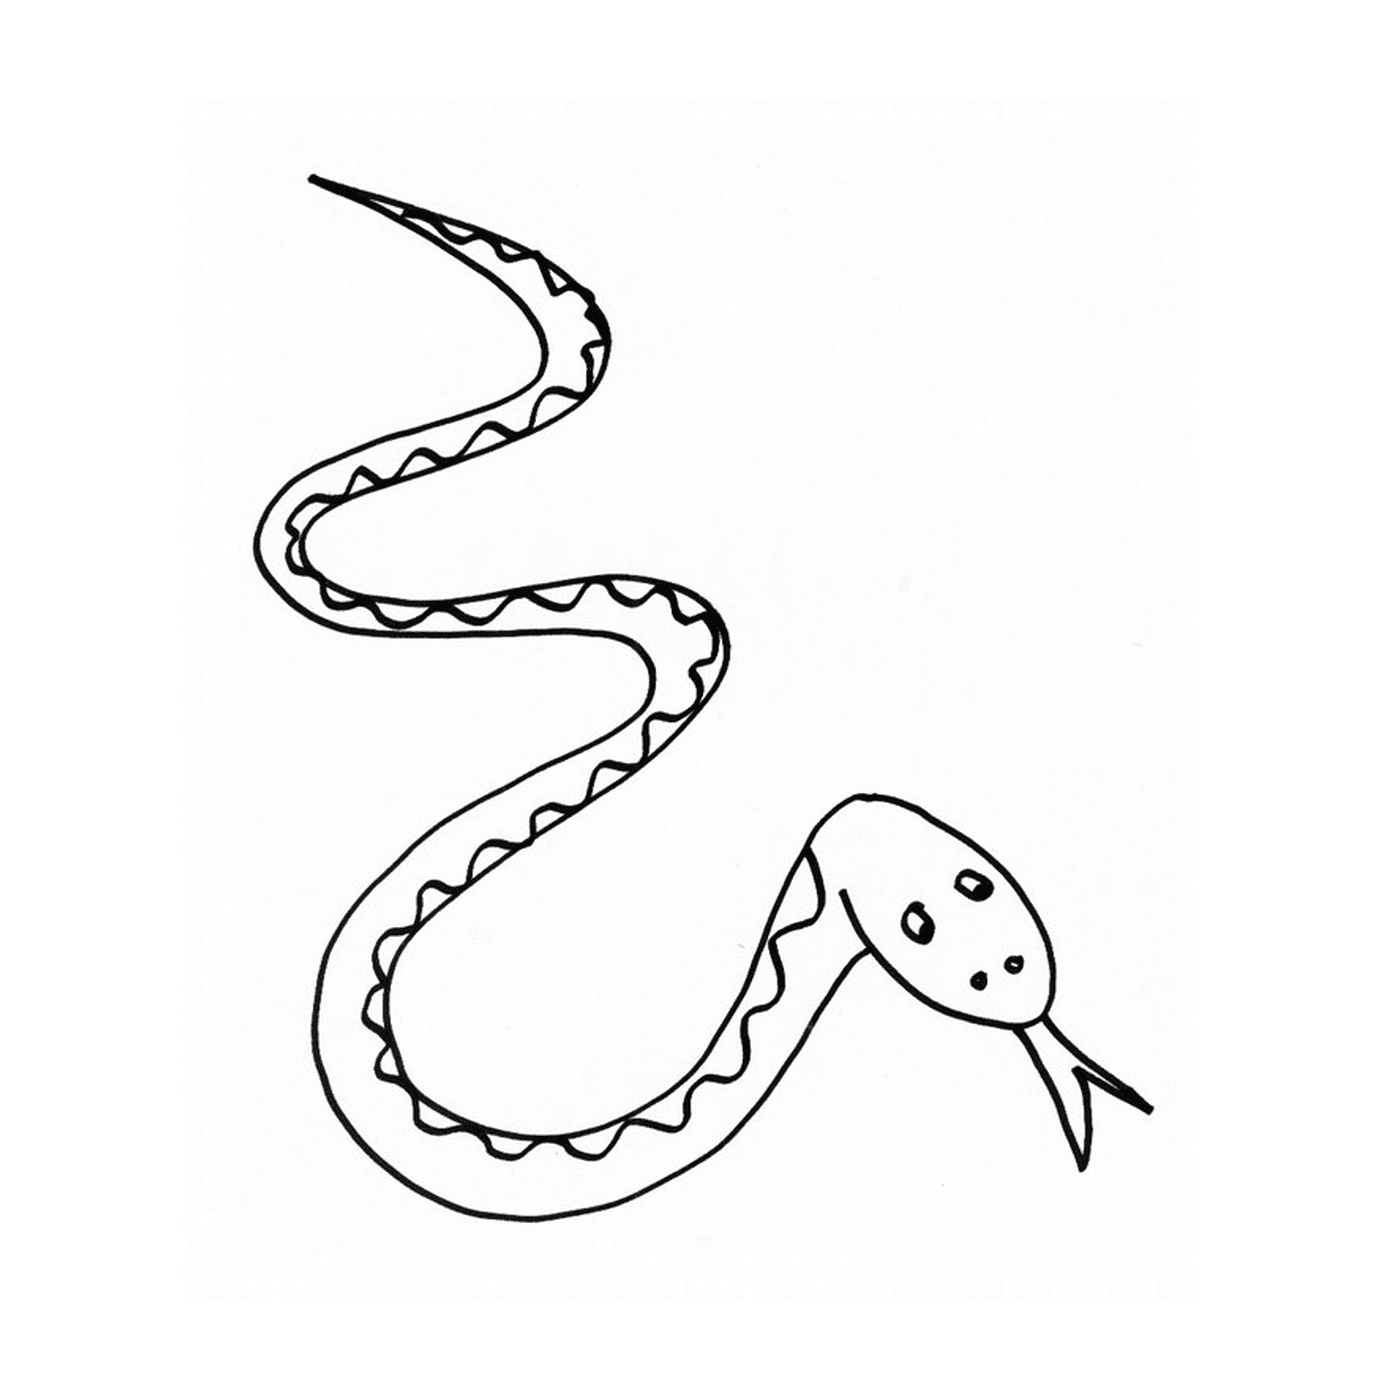  Una serpiente dibujada 